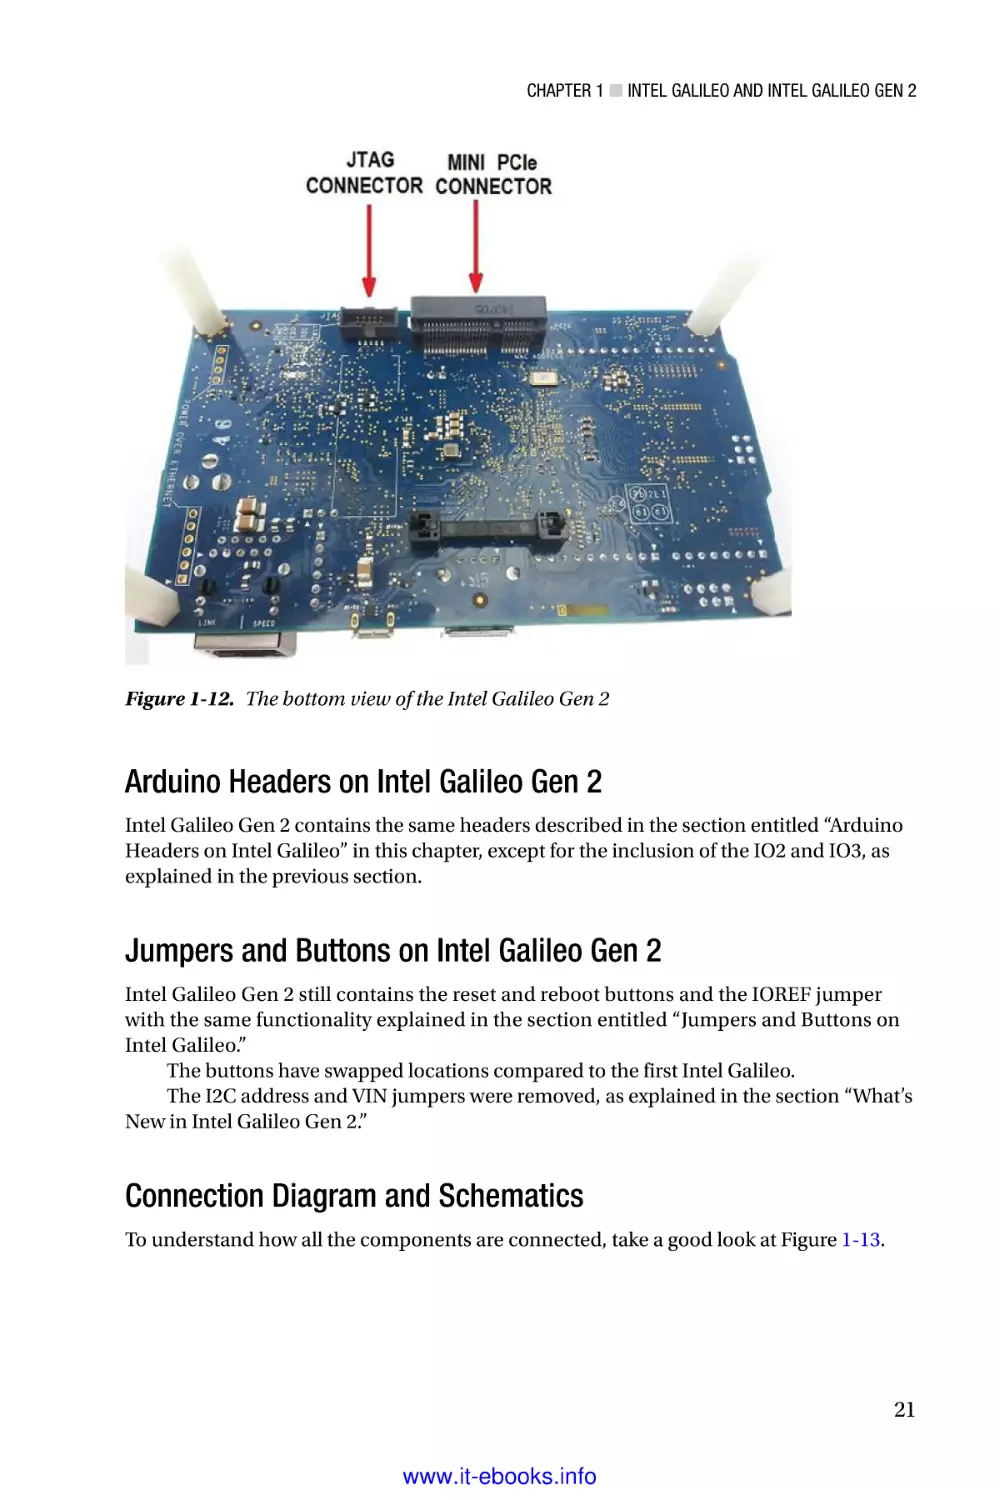 Arduino Headers on Intel Galileo Gen 2
Jumpers and Buttons on Intel Galileo Gen 2
Connection Diagram and Schematics